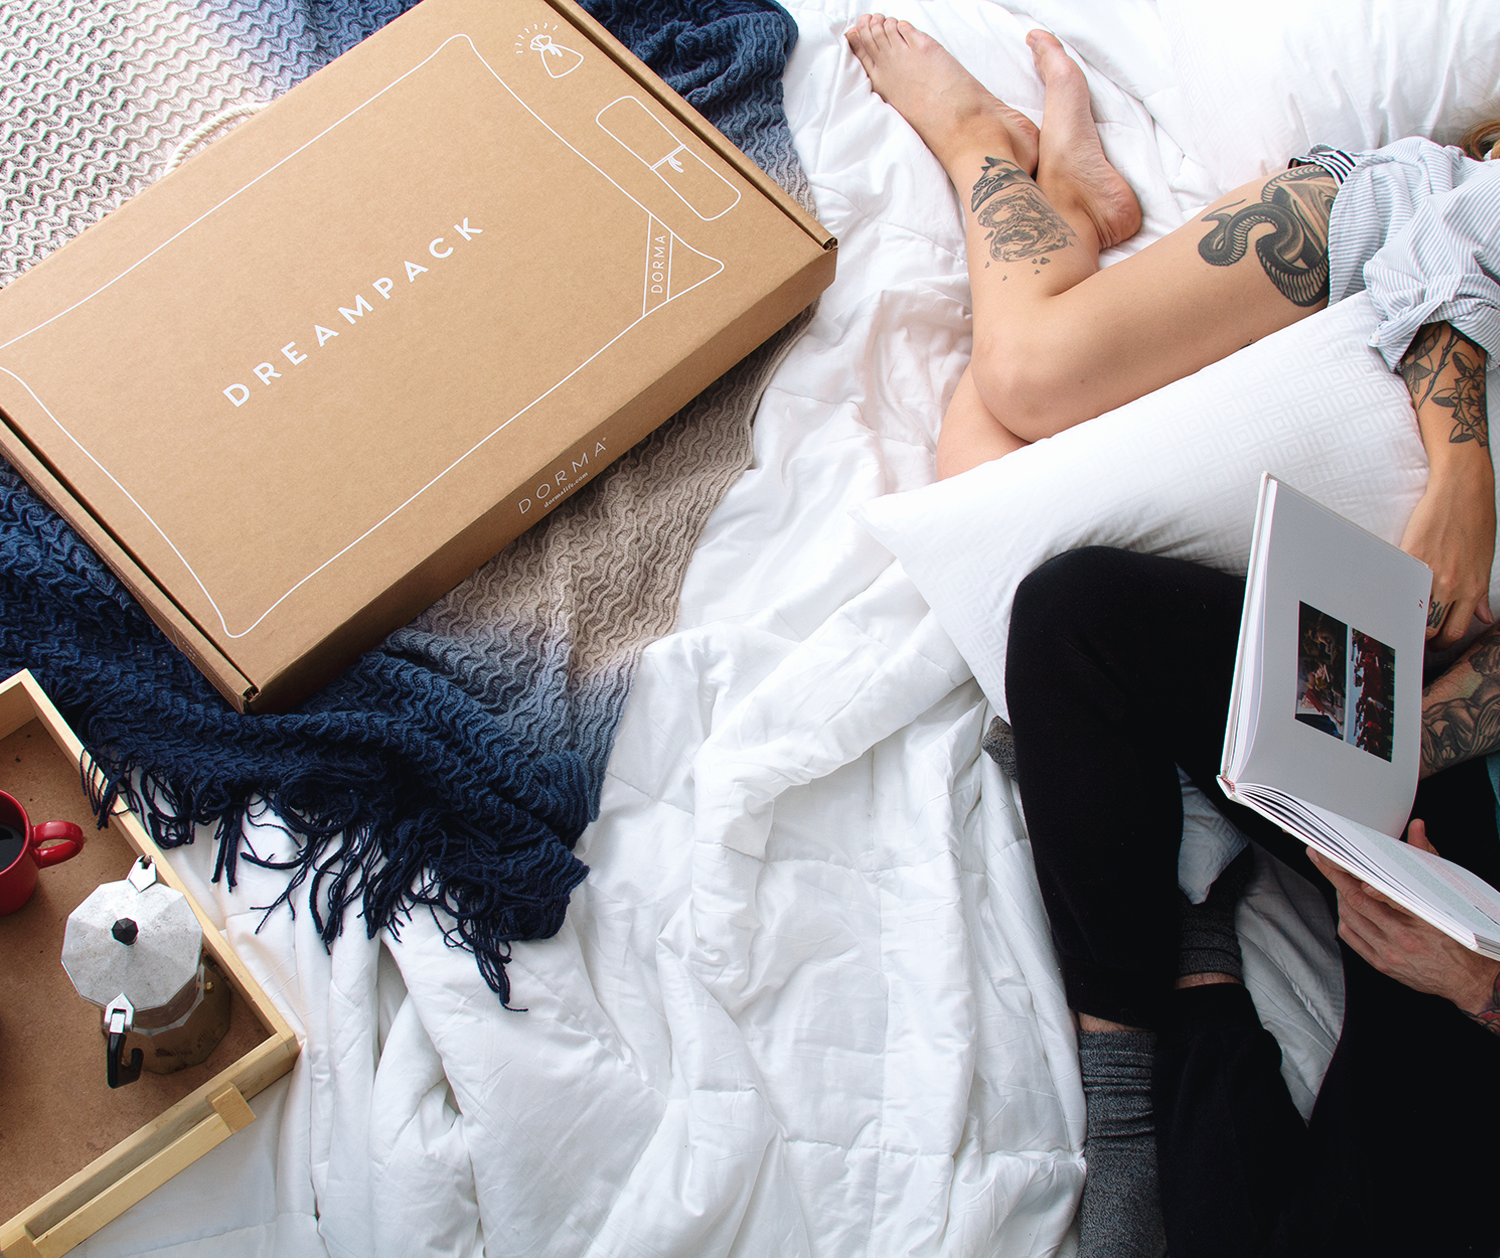 En la imagen se muestra una pareja sobre su cama leyendo un libro y en costado una frazada con degradados de azul y beige y sobre ella una caja de dreampack. 